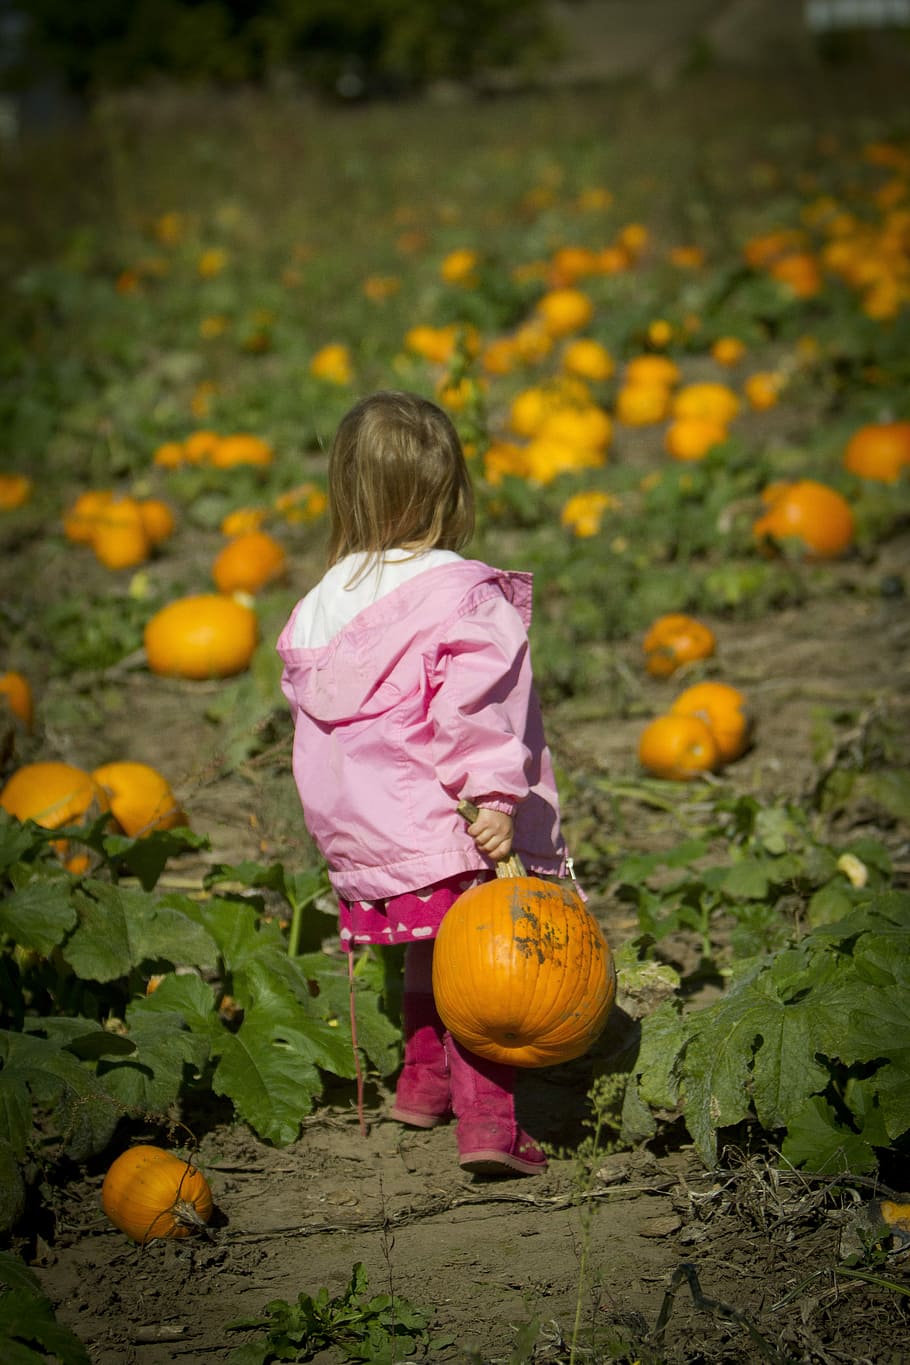 HD wallpaper: Girl Carrying Pumpkin, Pumpkin Patch, girl pumpkin, pumpkin  farm | Wallpaper Flare